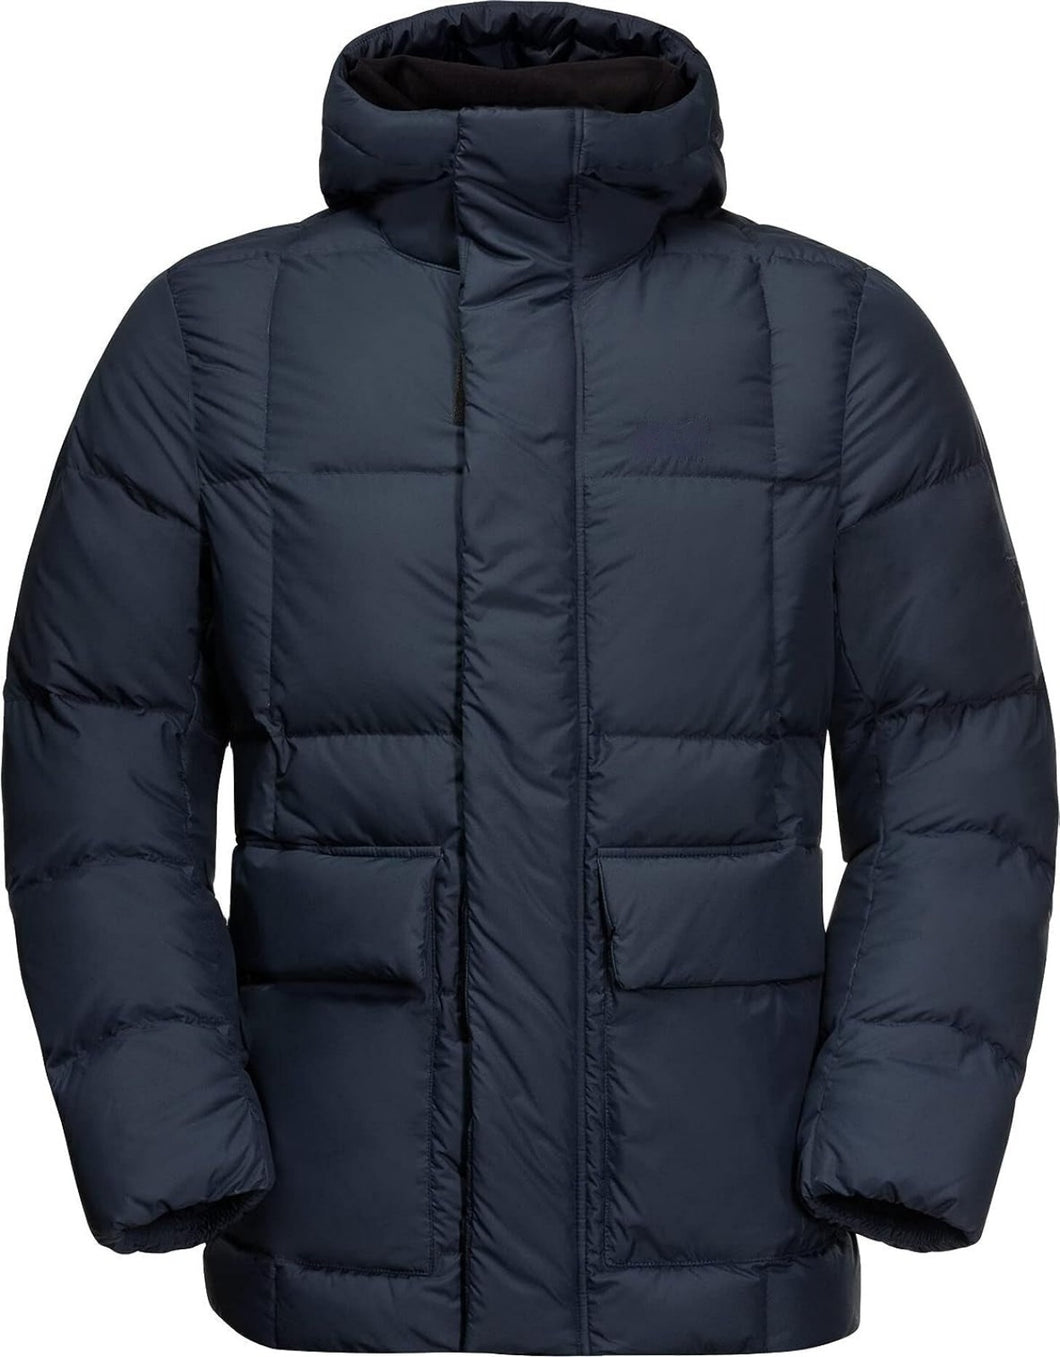 Men's Standard Frozen Lake Jacket